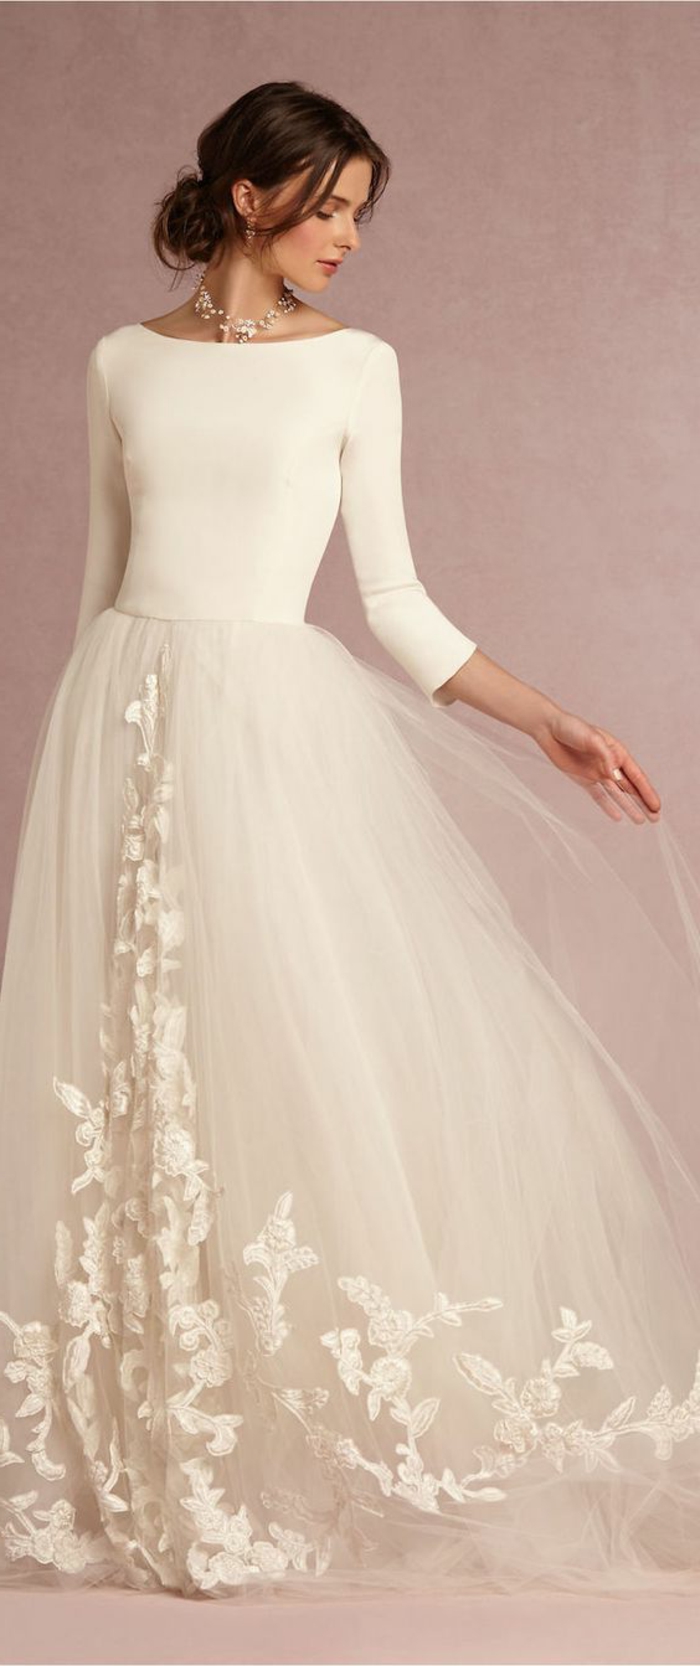 robe mariage civil en dentelle blanche, modèle avec longueur maximale, col bateau, manches 3/4, style ballerine, tulle blanc long